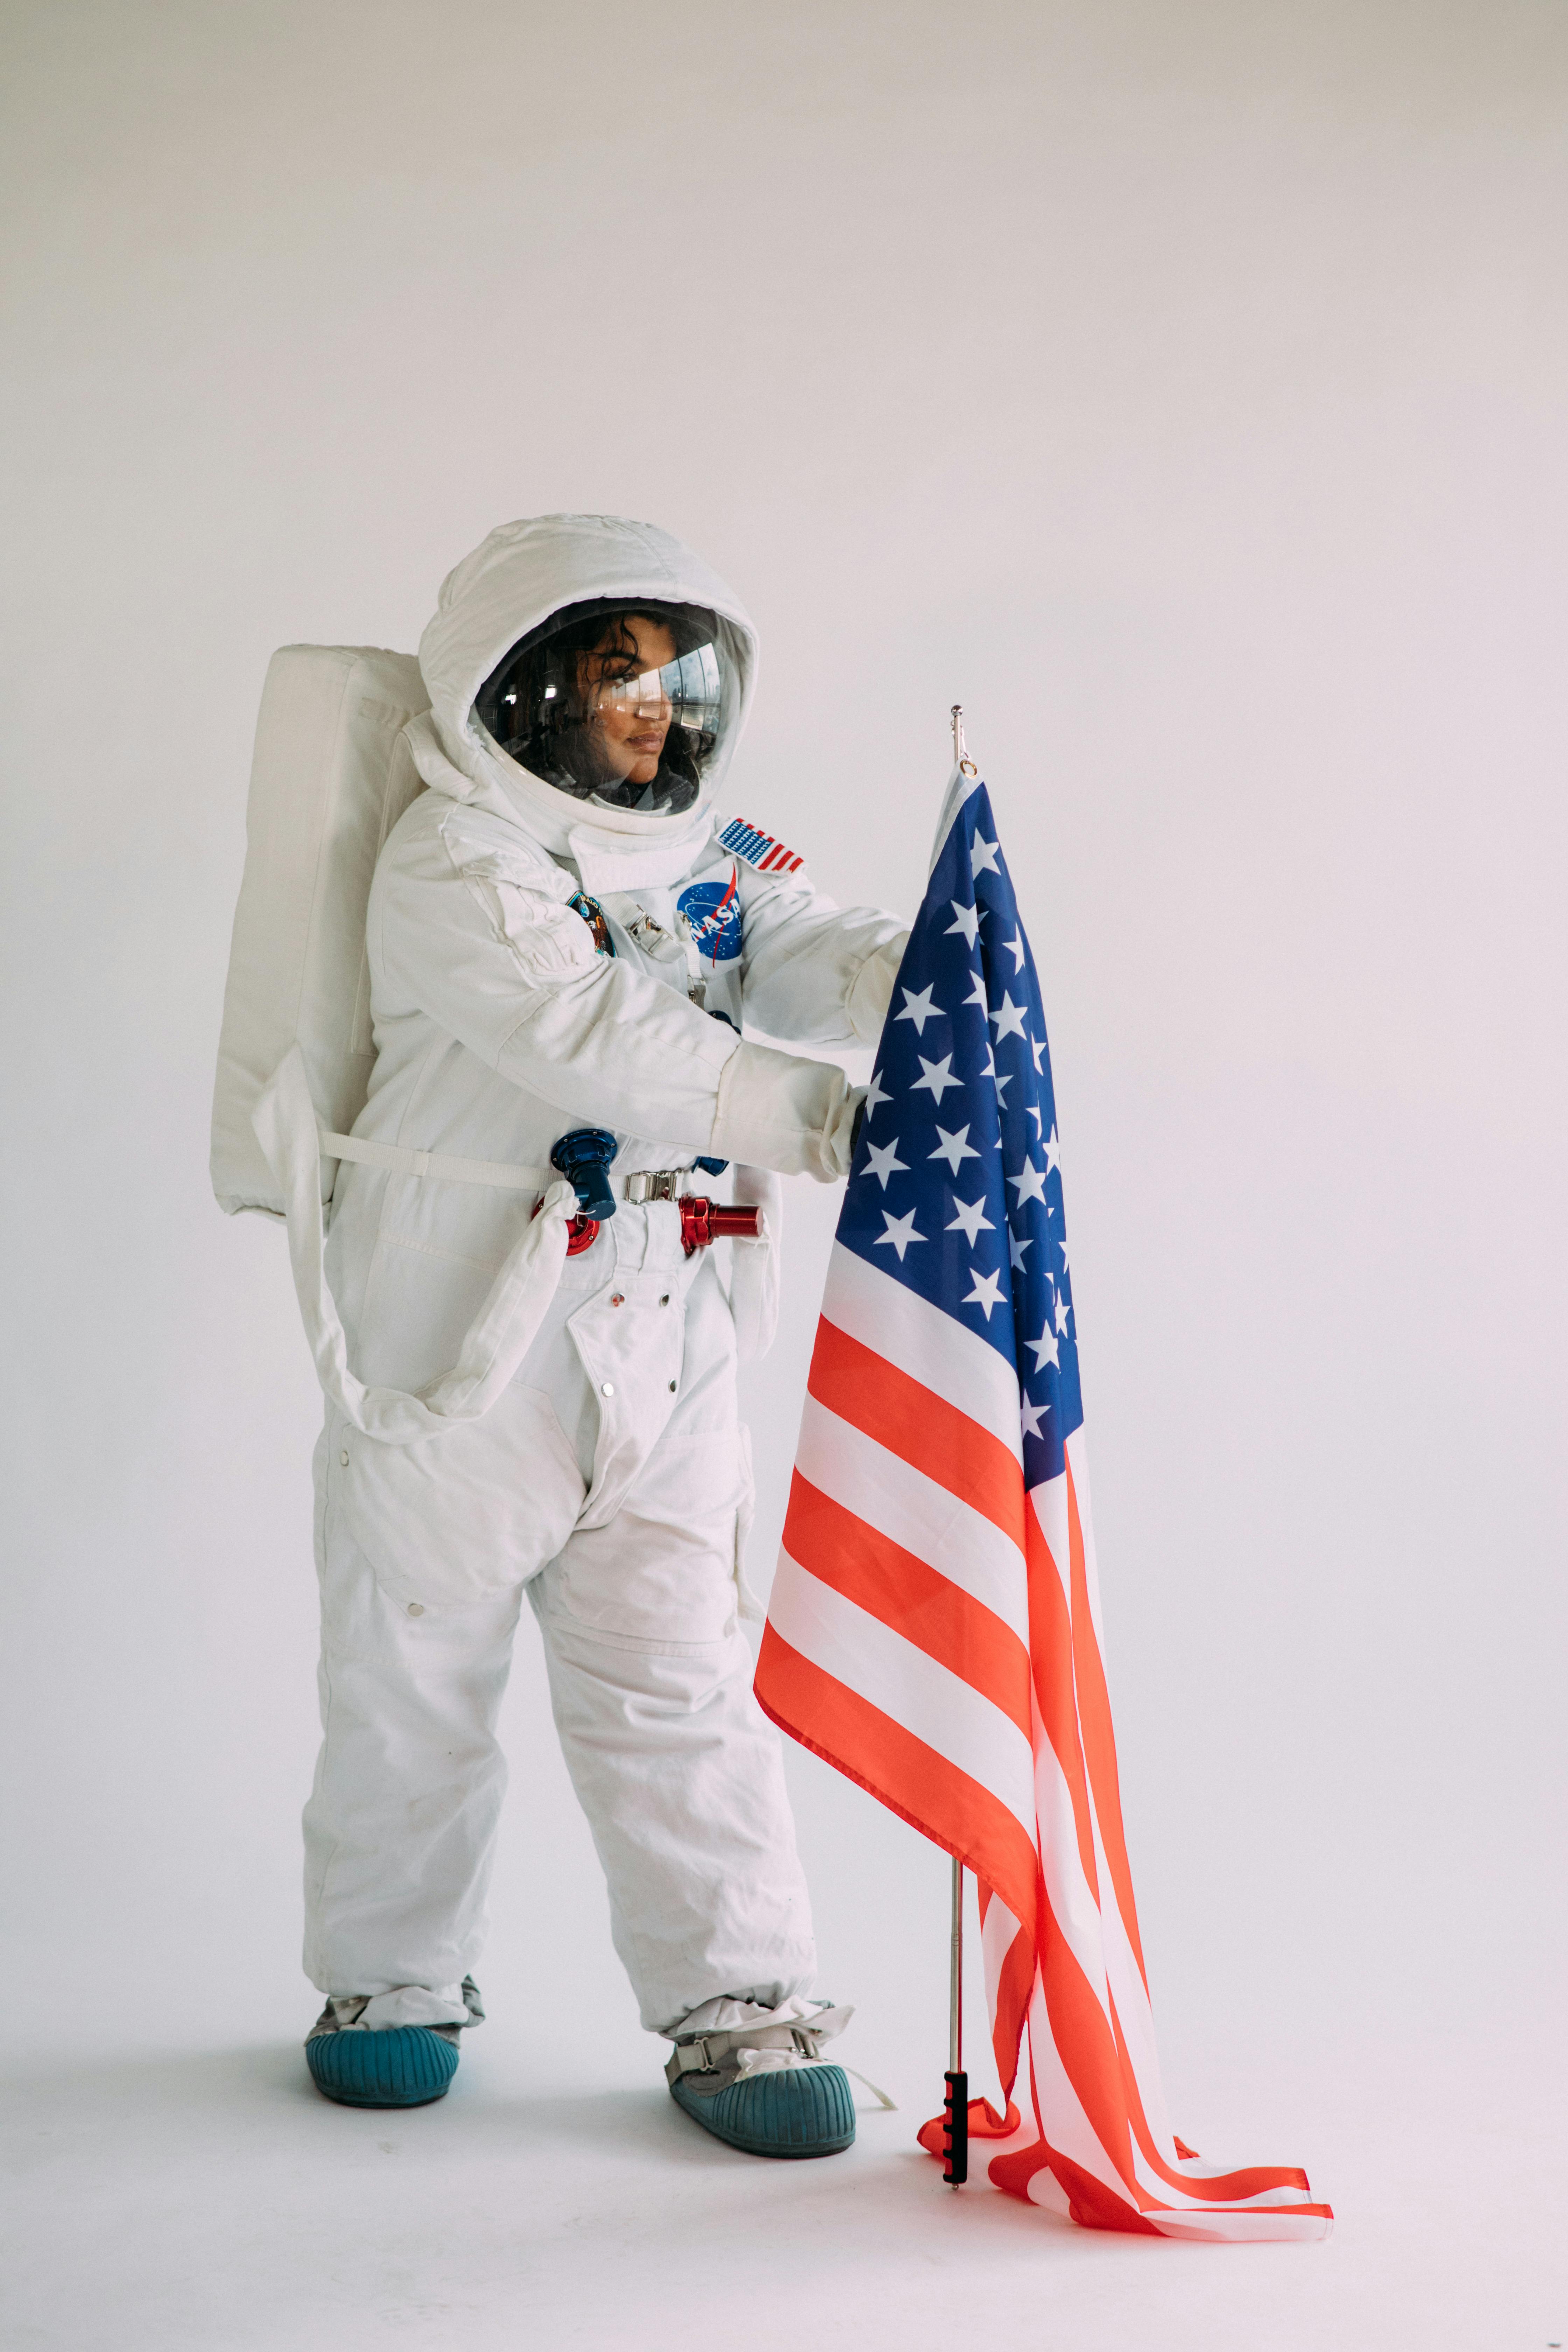 Gratis af amerikansk flag, astronaut, halloween, halloween tema, hjelm, kostume, kvinde, luftfart, nasa, outfit, person, portræt, smuk, tøj